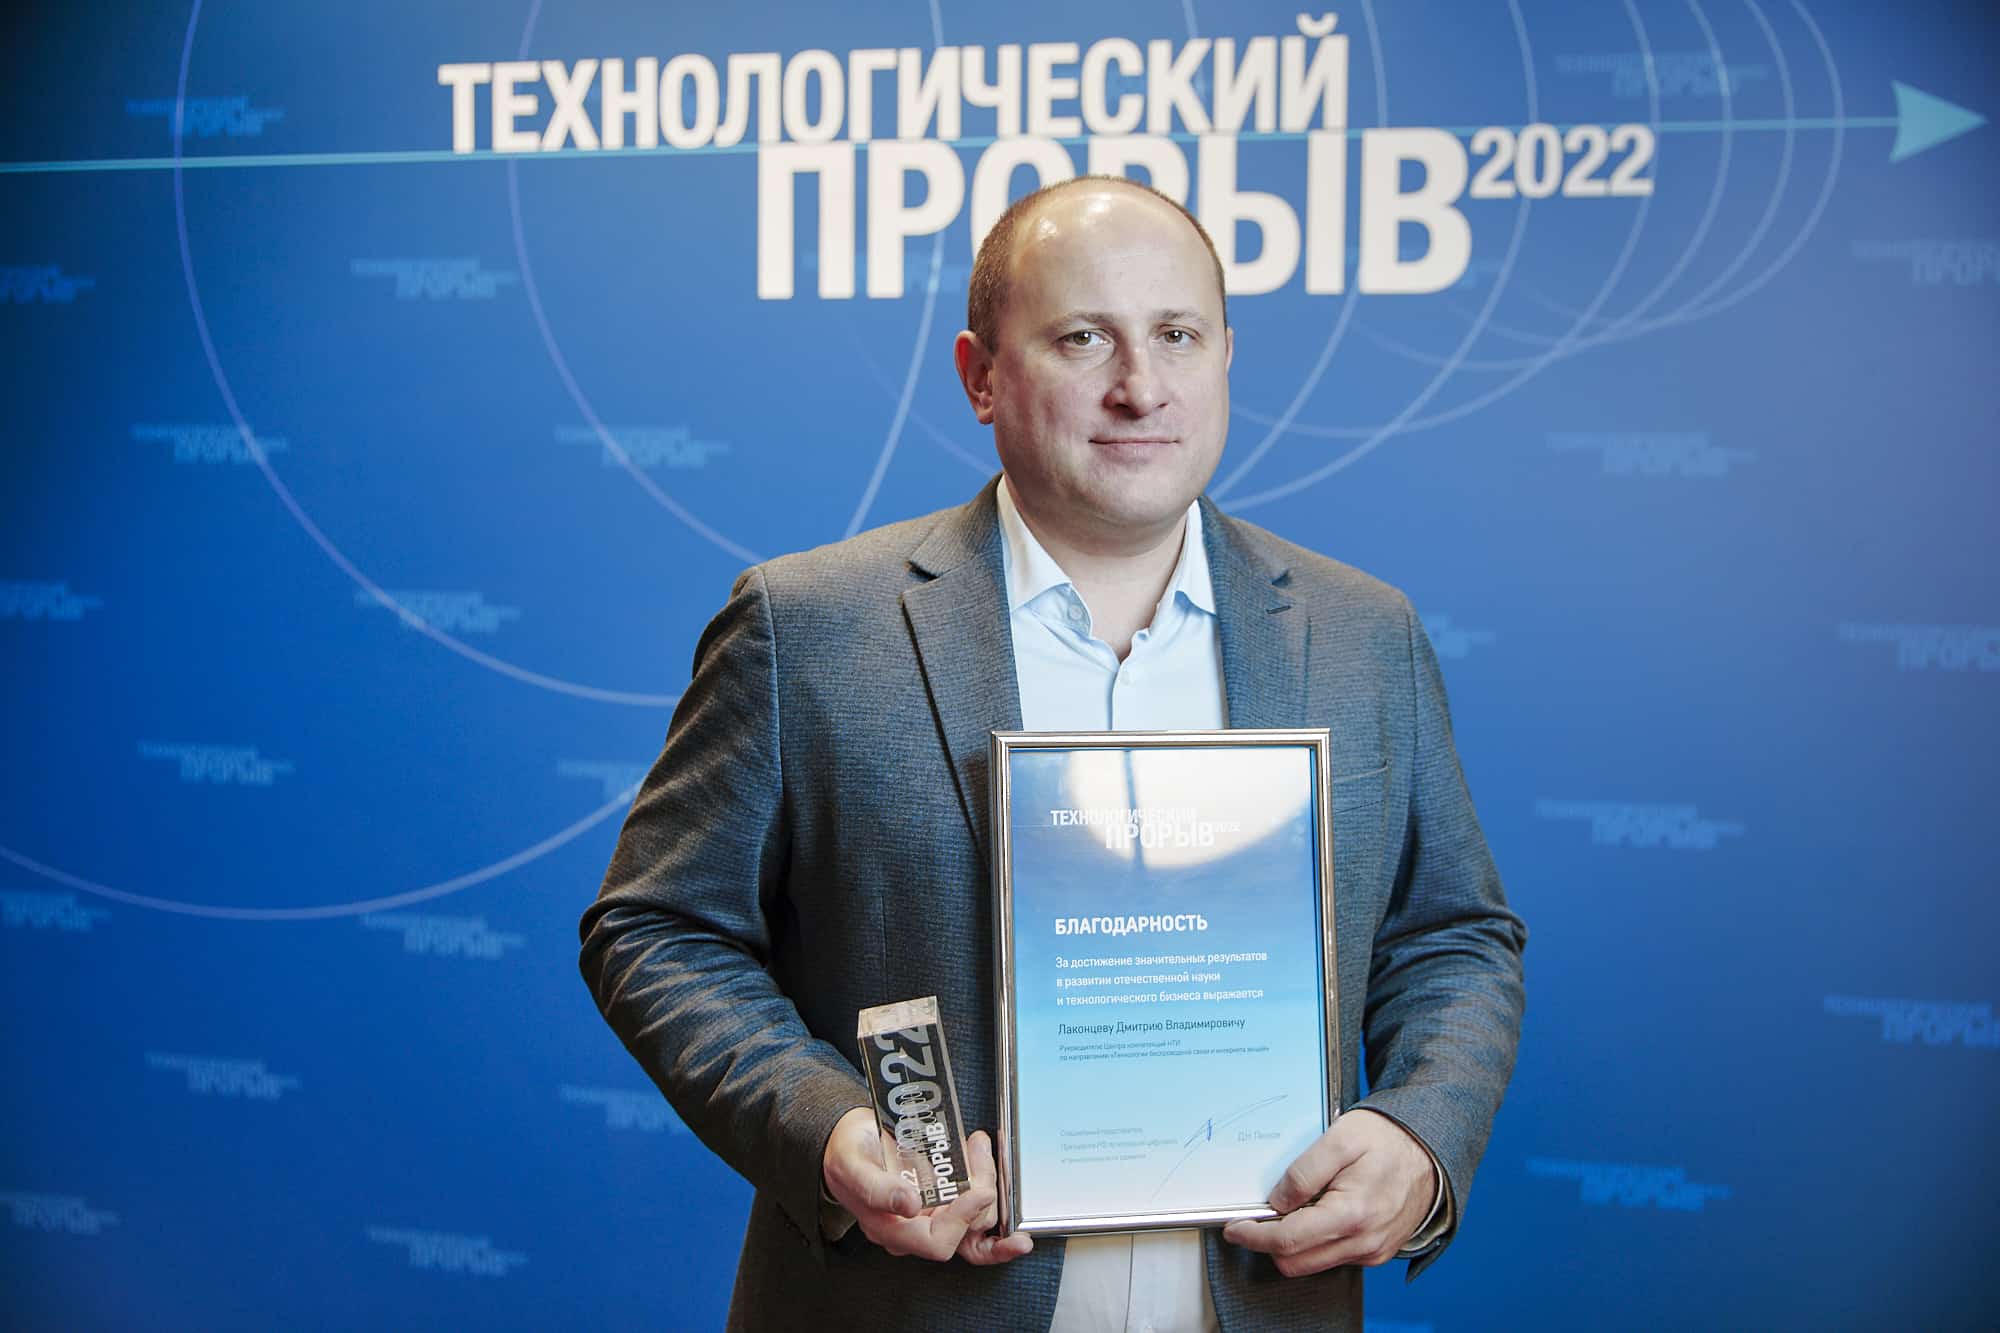 За разработки в области мобильной связи пятого поколения (5G) Дмитрий Лаконцев, возглавляющий Центр компетенций НТИ на базе Сколтеха, 8 декабря получил премию «Технологический прорыв 2022». Проекты ЦК НТИ уже третий…